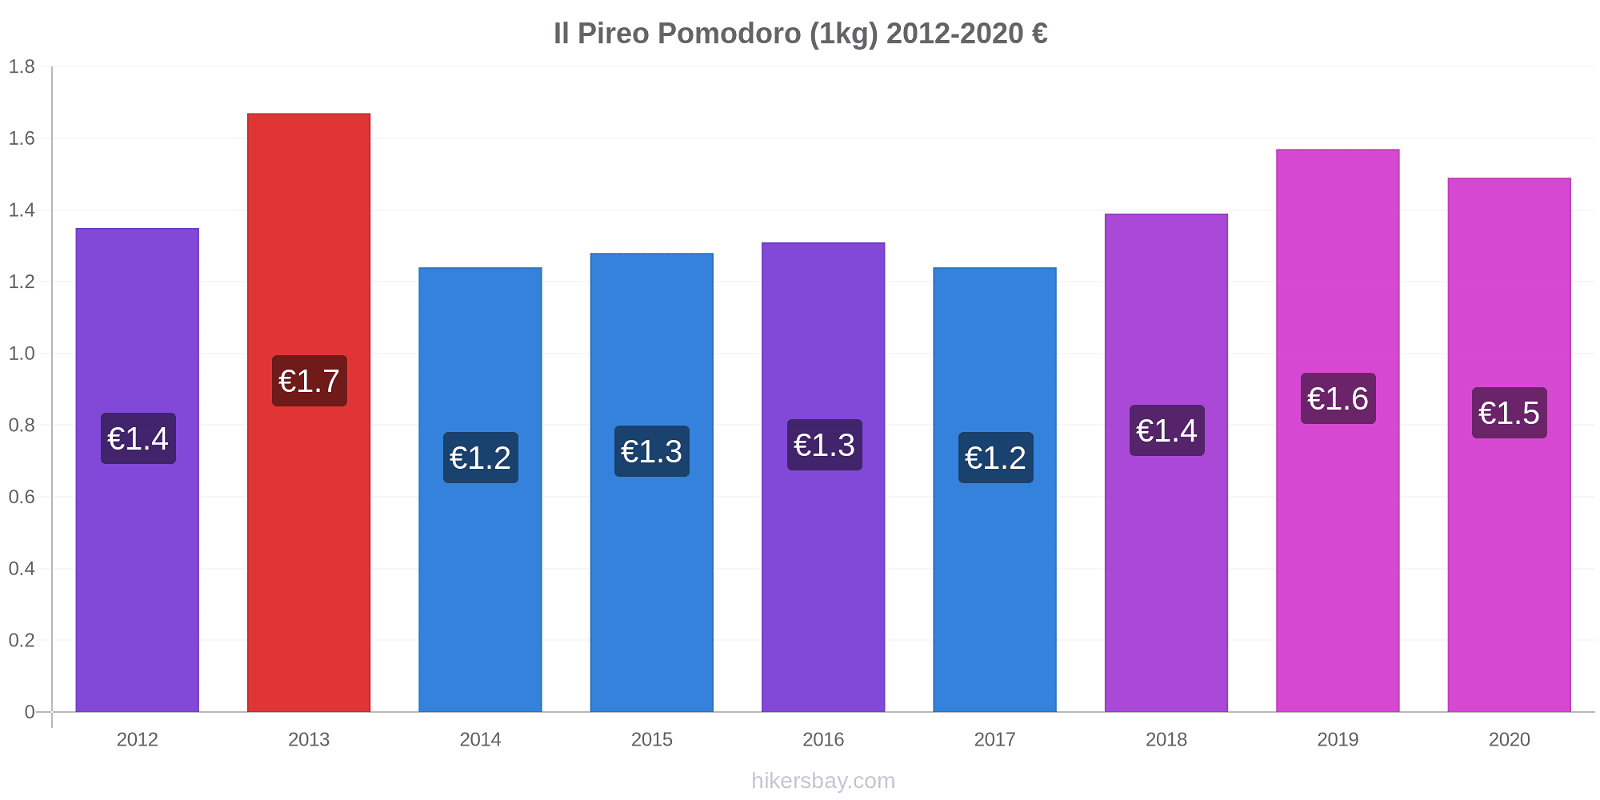 Il Pireo variazioni di prezzo Pomodoro (1kg) hikersbay.com